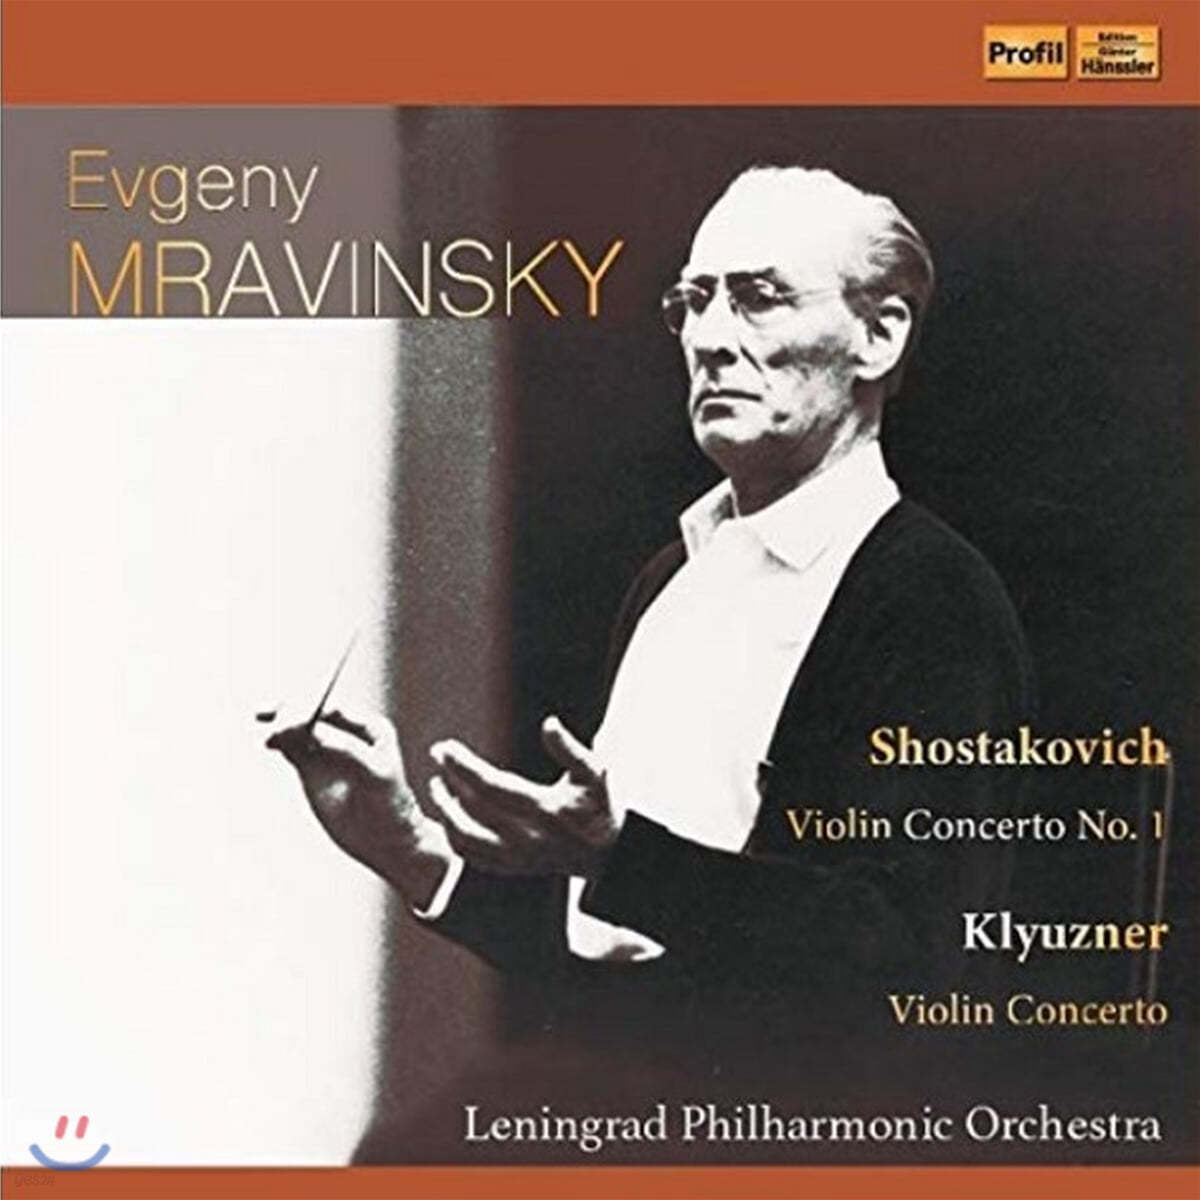 Evgeny Mravinsky 쇼스타코비치: 바이올린 협주곡 1번 / 보리스 크루즈너: 바이올린 협주곡 (Shostakovich: Violin Concerto Op. 77 / Boris Klyuzner: Violin Concerto)